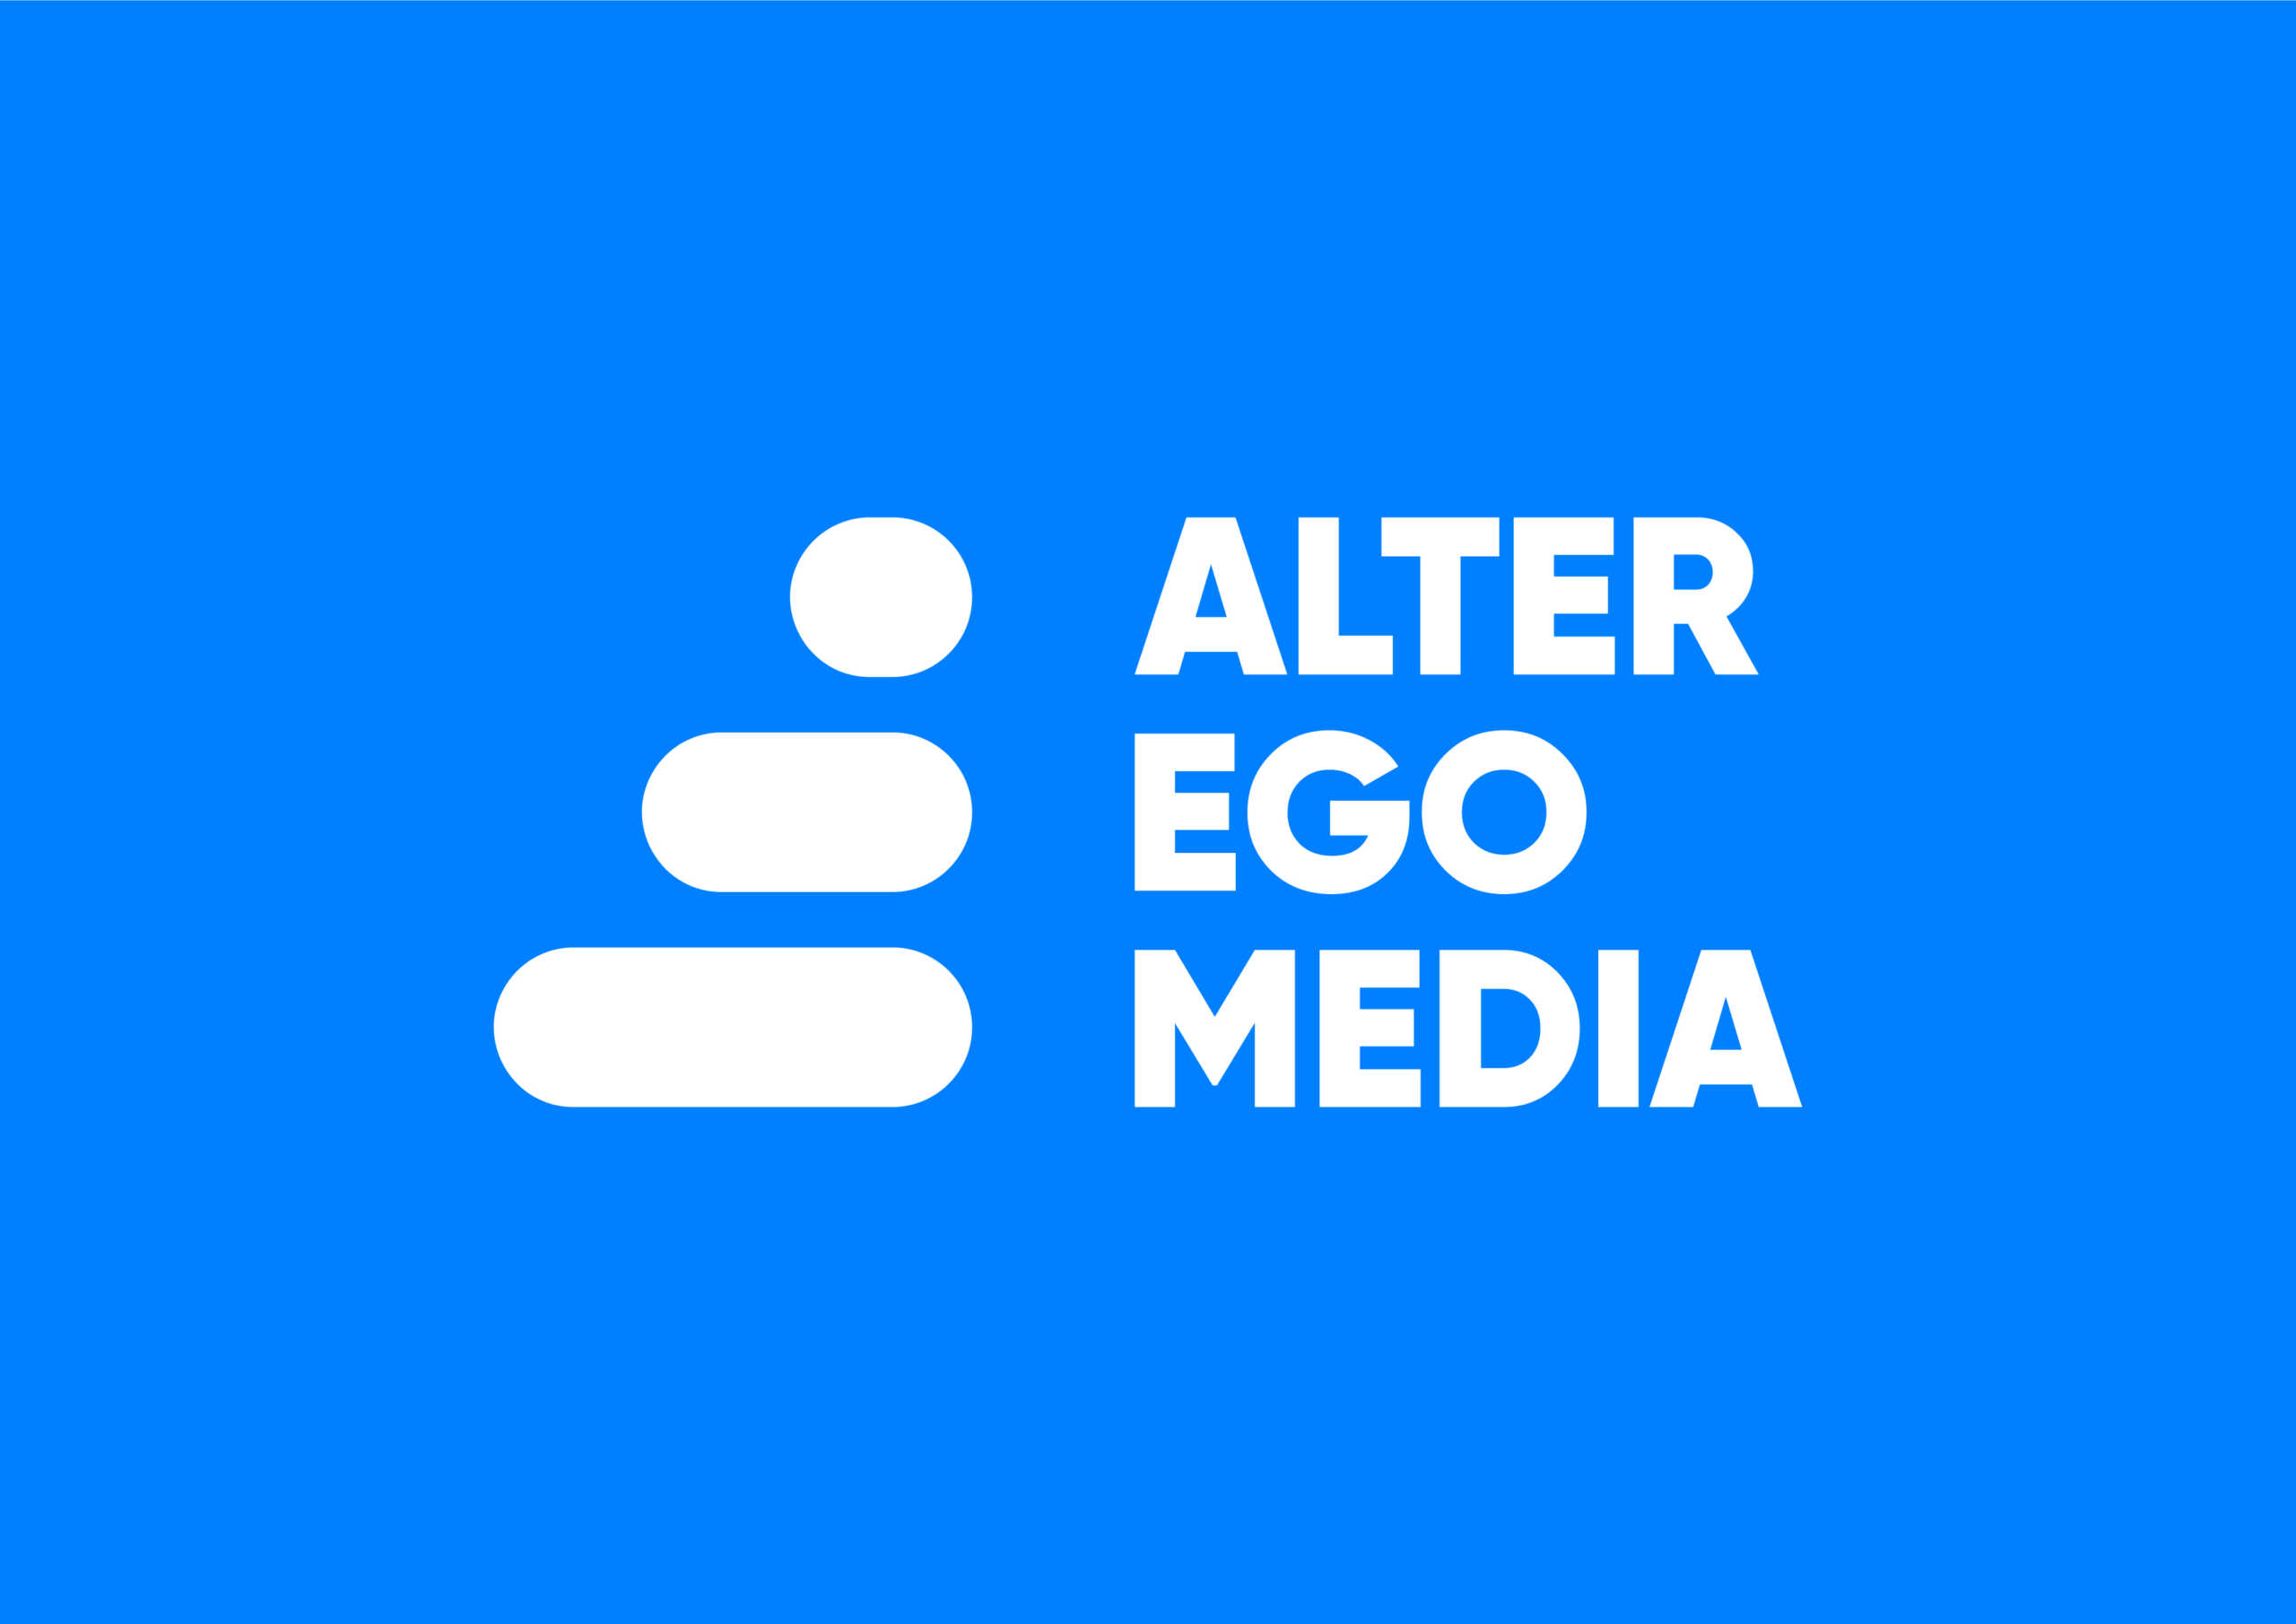 Alter Ego Media: Νέα εταιρική ταυτότητα, καινοτομία, πολυφωνία και έμπνευση